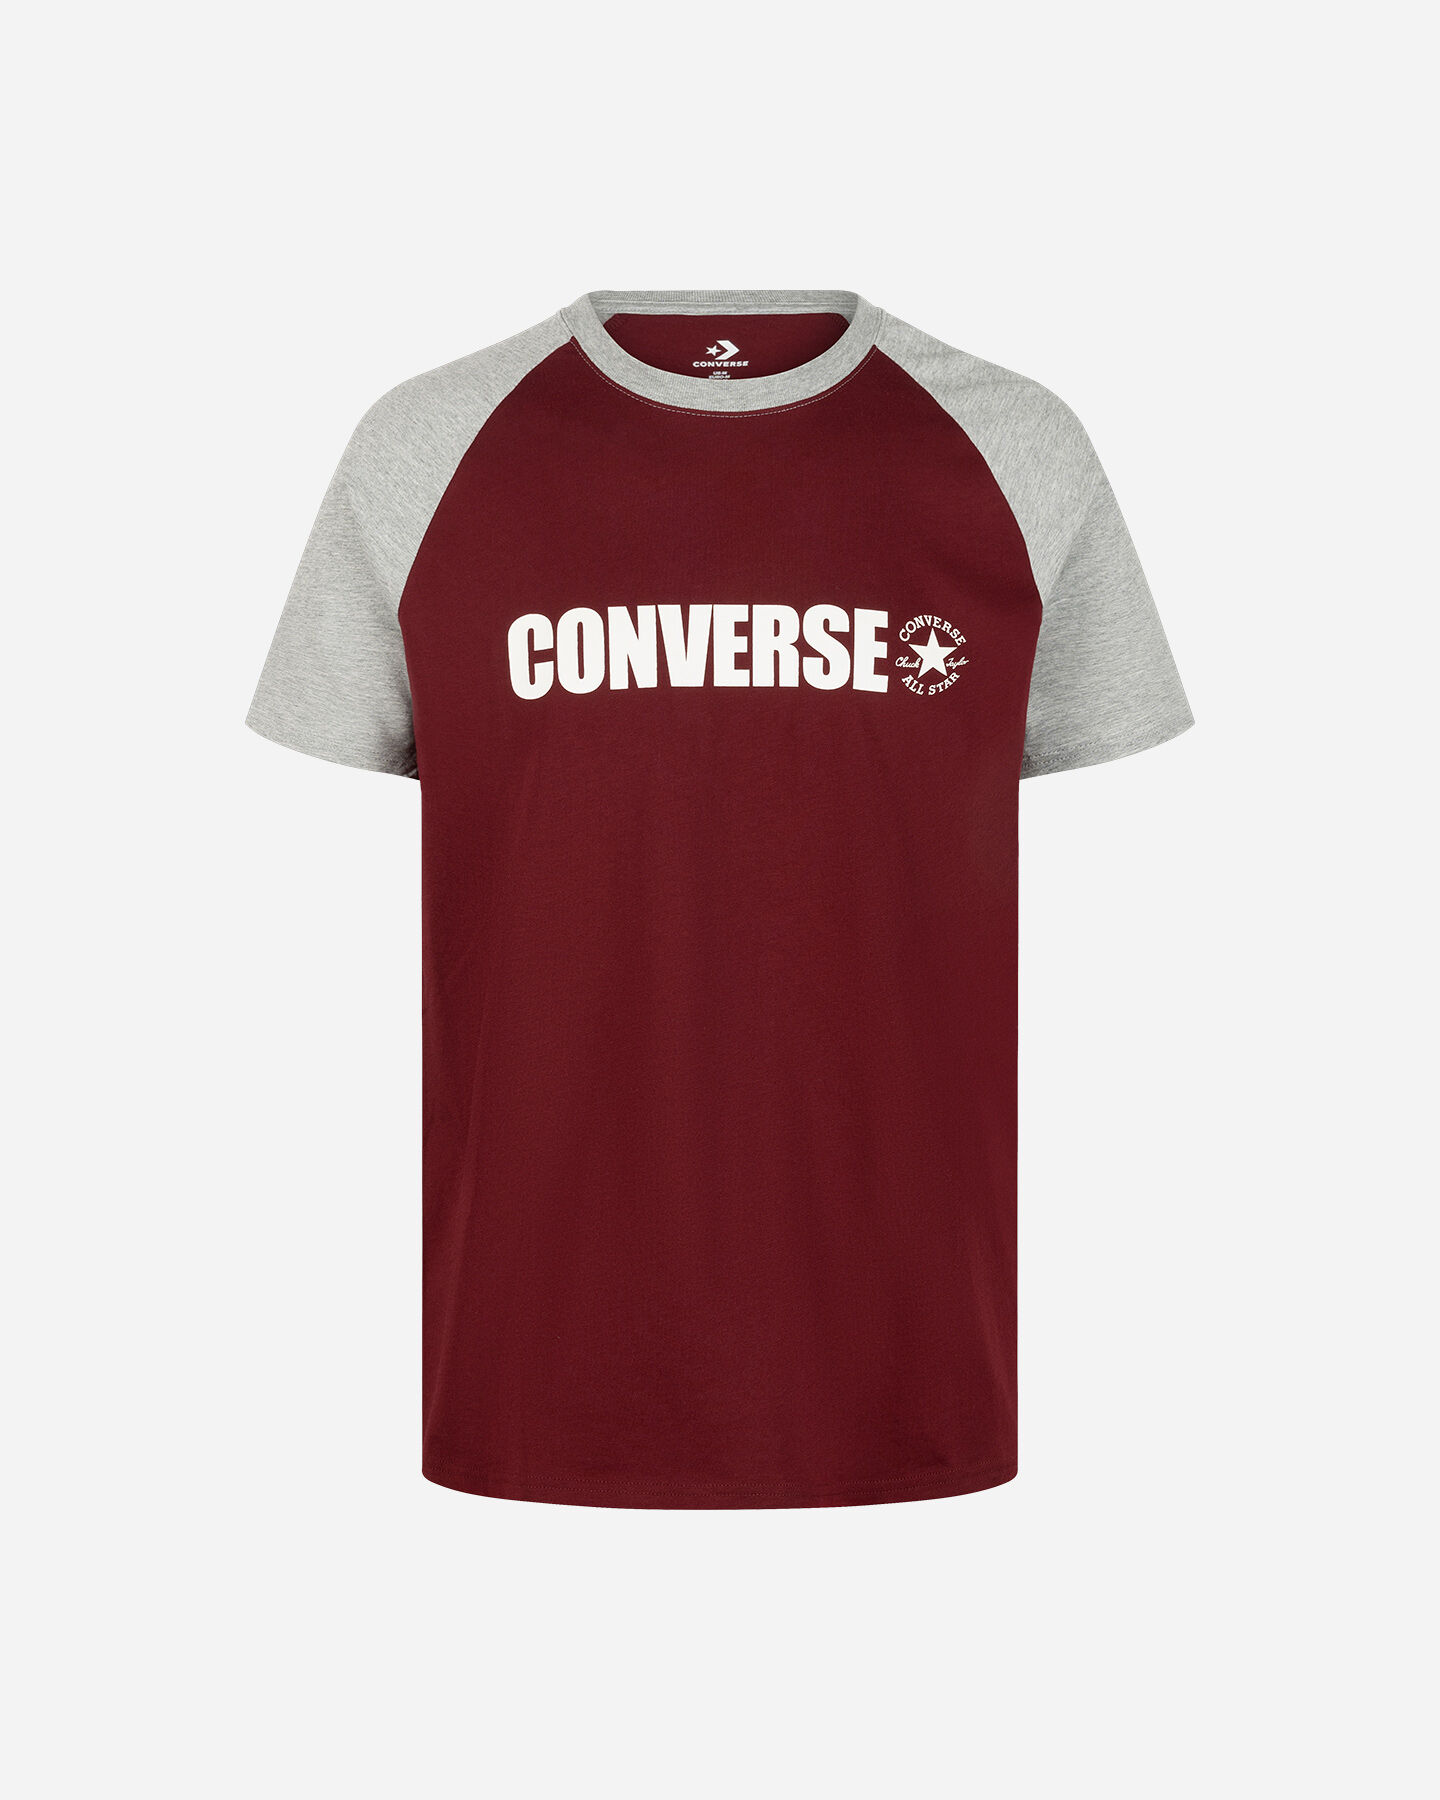  T-Shirt CONVERSE RETRO CHUCK M S5673819|625|S scatto 0